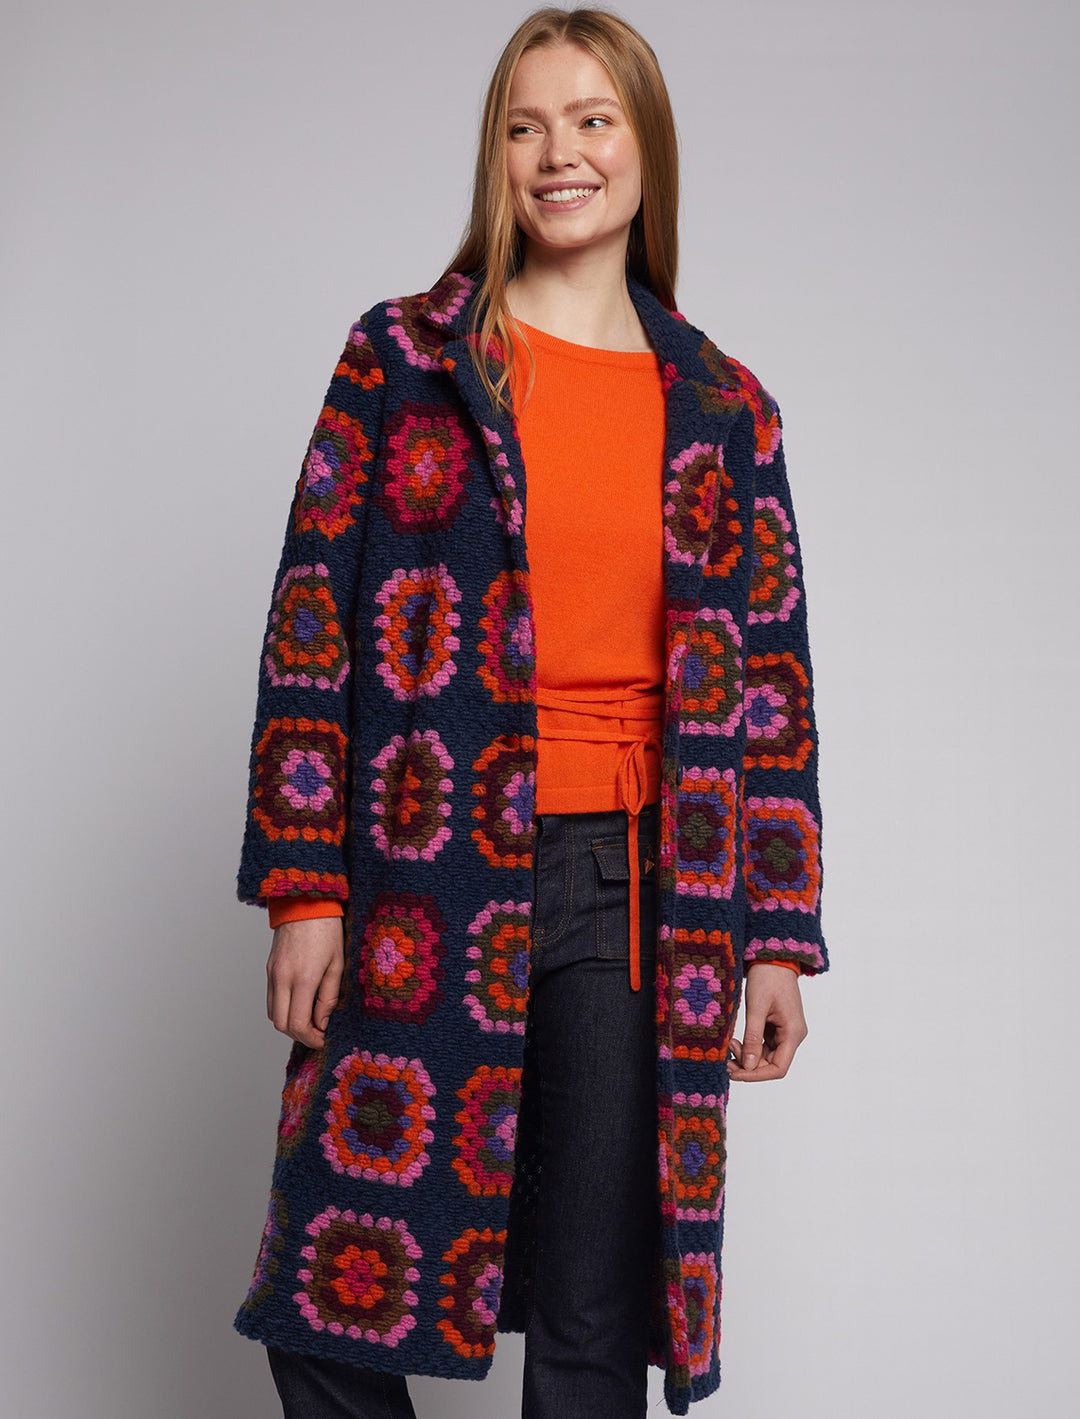 Model wearing Vilagallo's yana crochet cardigan coat.